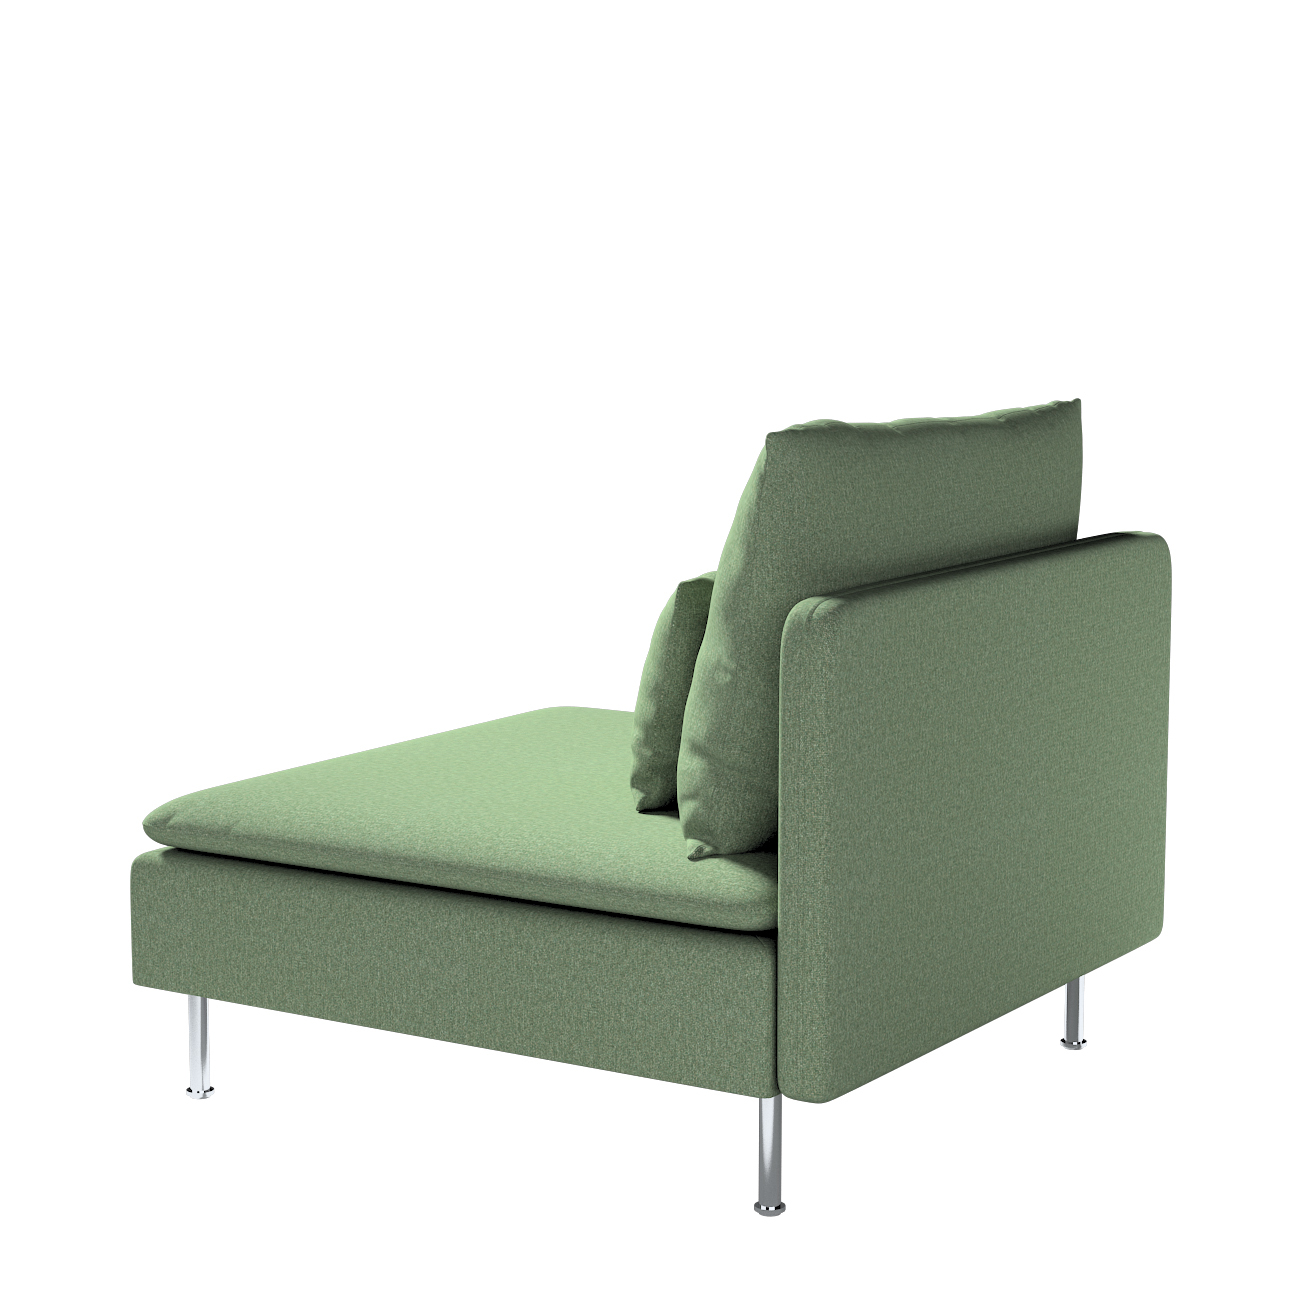 Bezug für Söderhamn Sitzelement 1, grün, Bezug für Sitzelement 1, Amsterdam günstig online kaufen